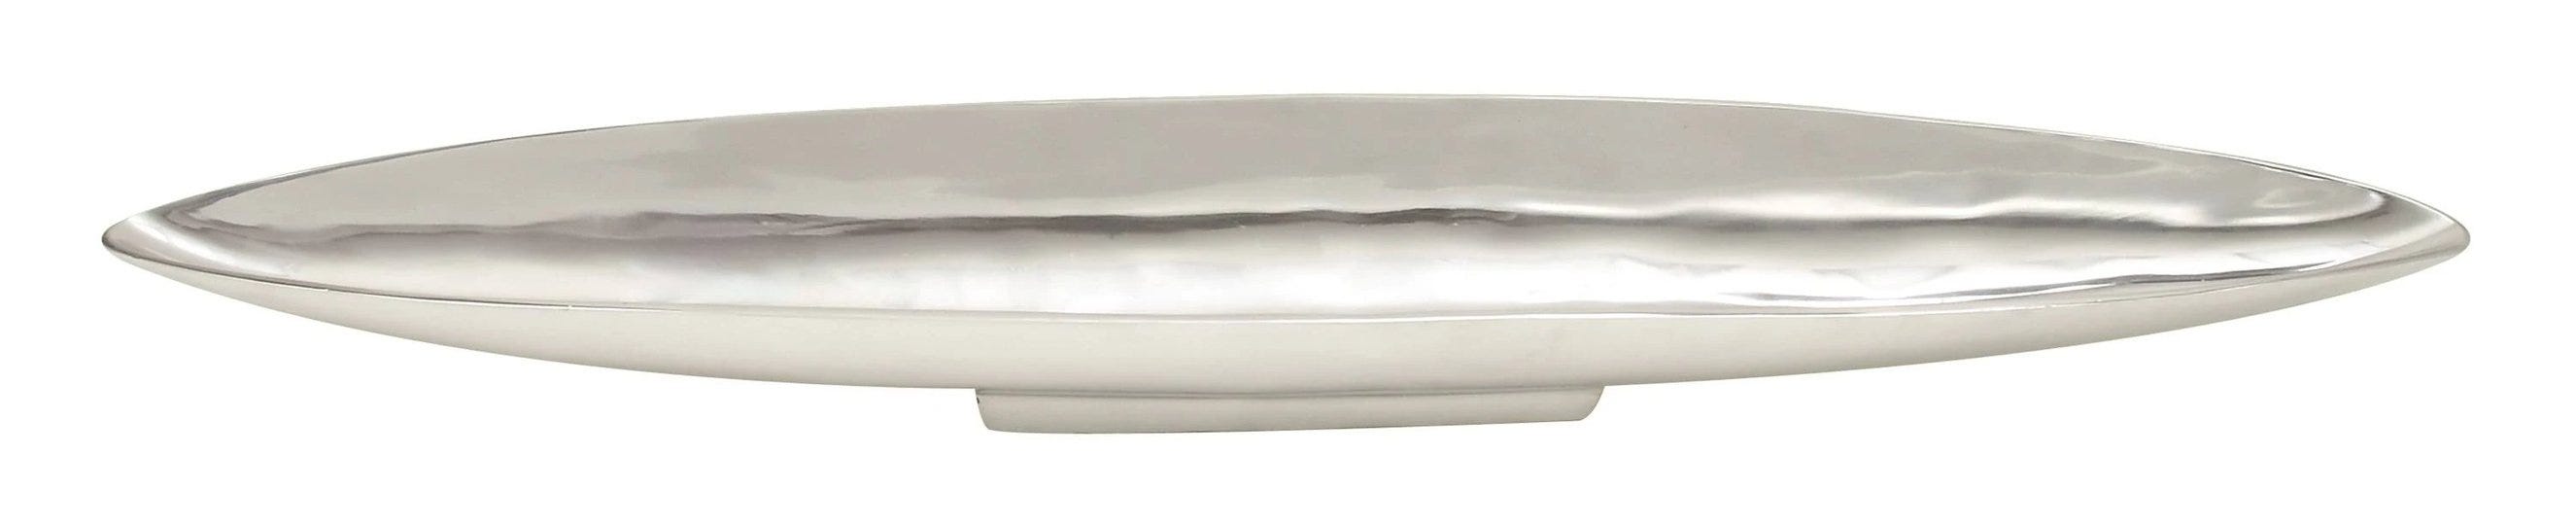 silver-aluminum-tray-1